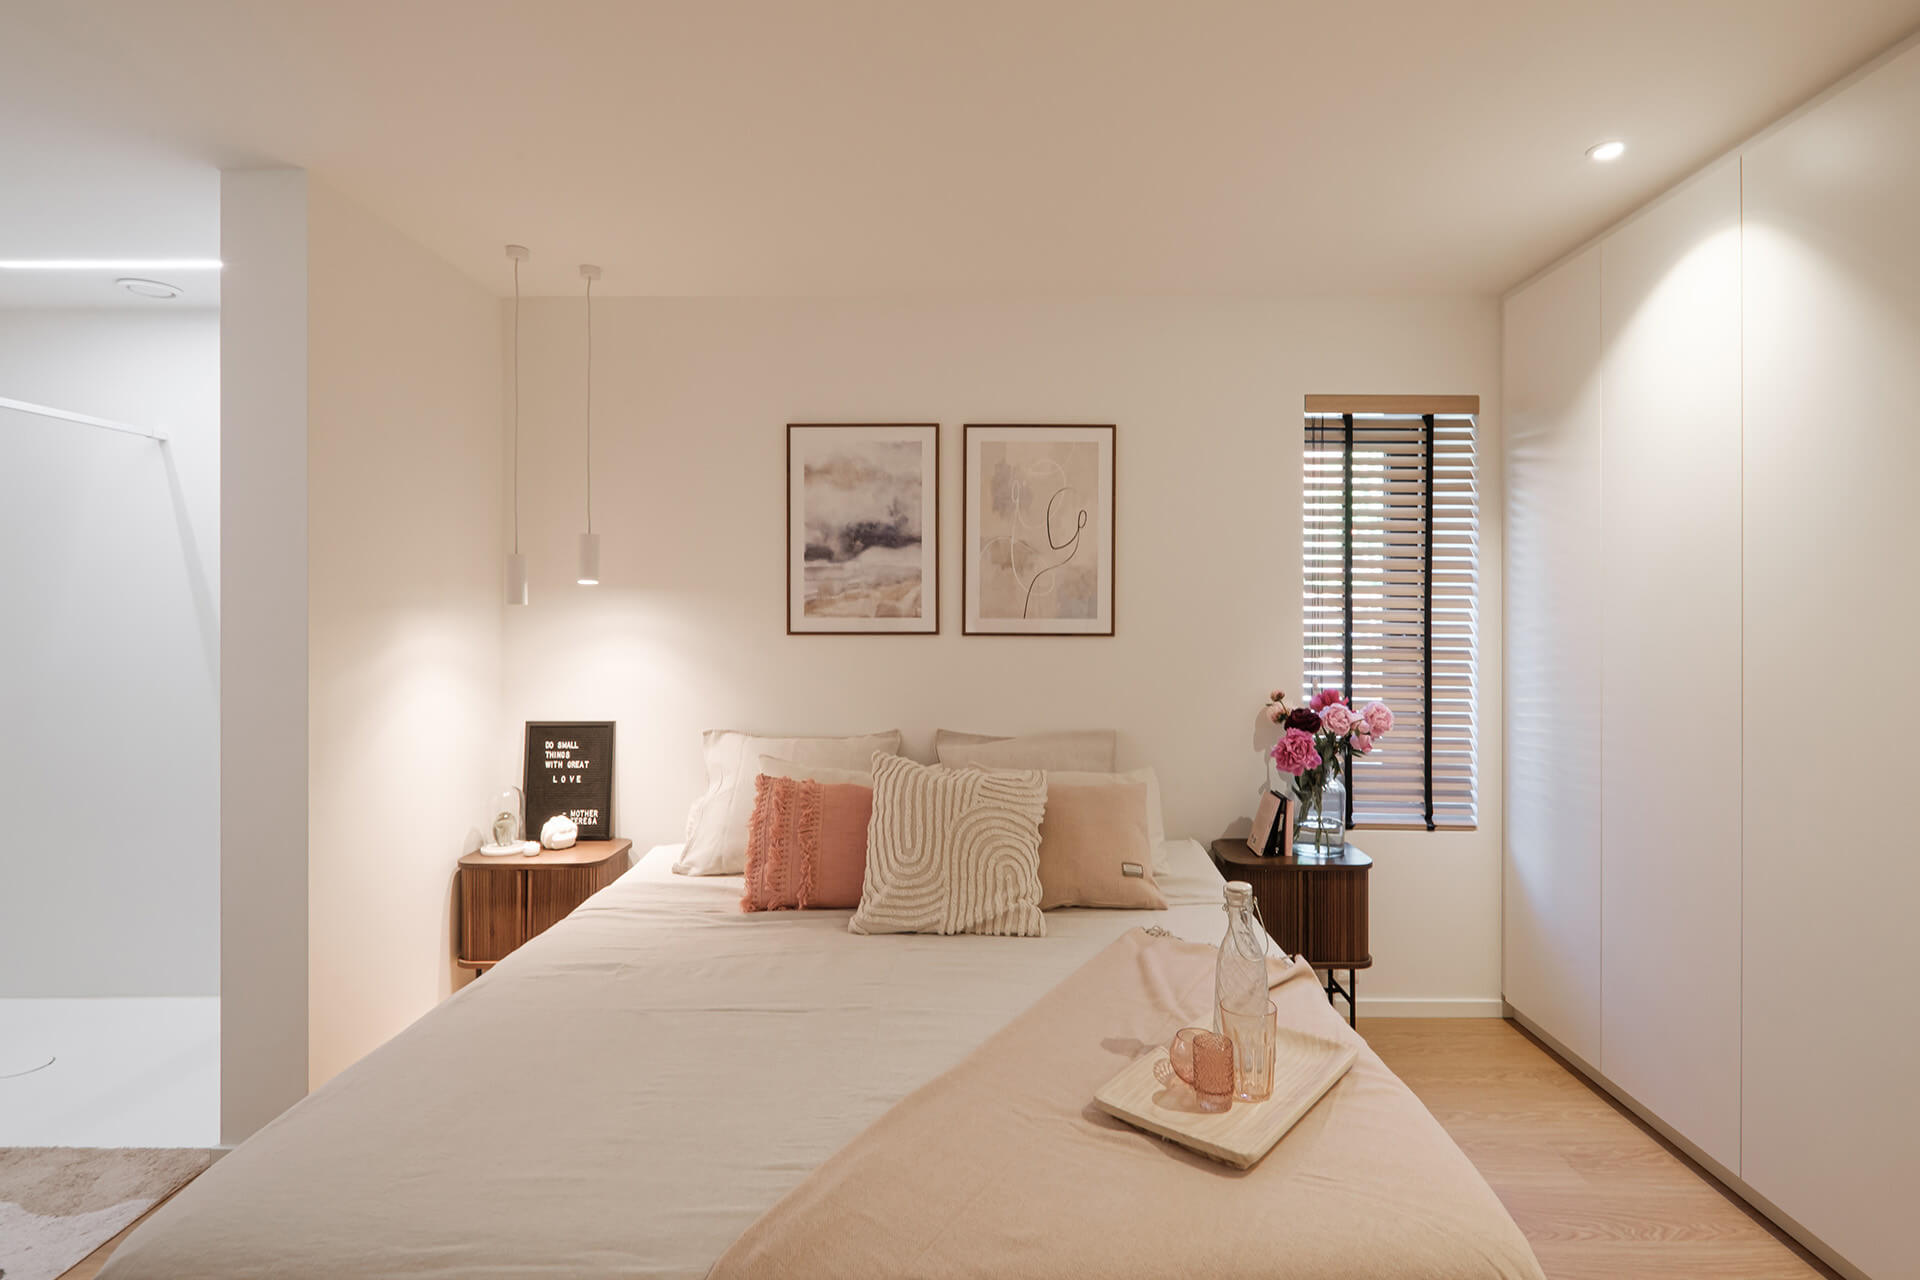 Ingebouwde dressingkast tussen 2 muren in slaapkamer met roze touch